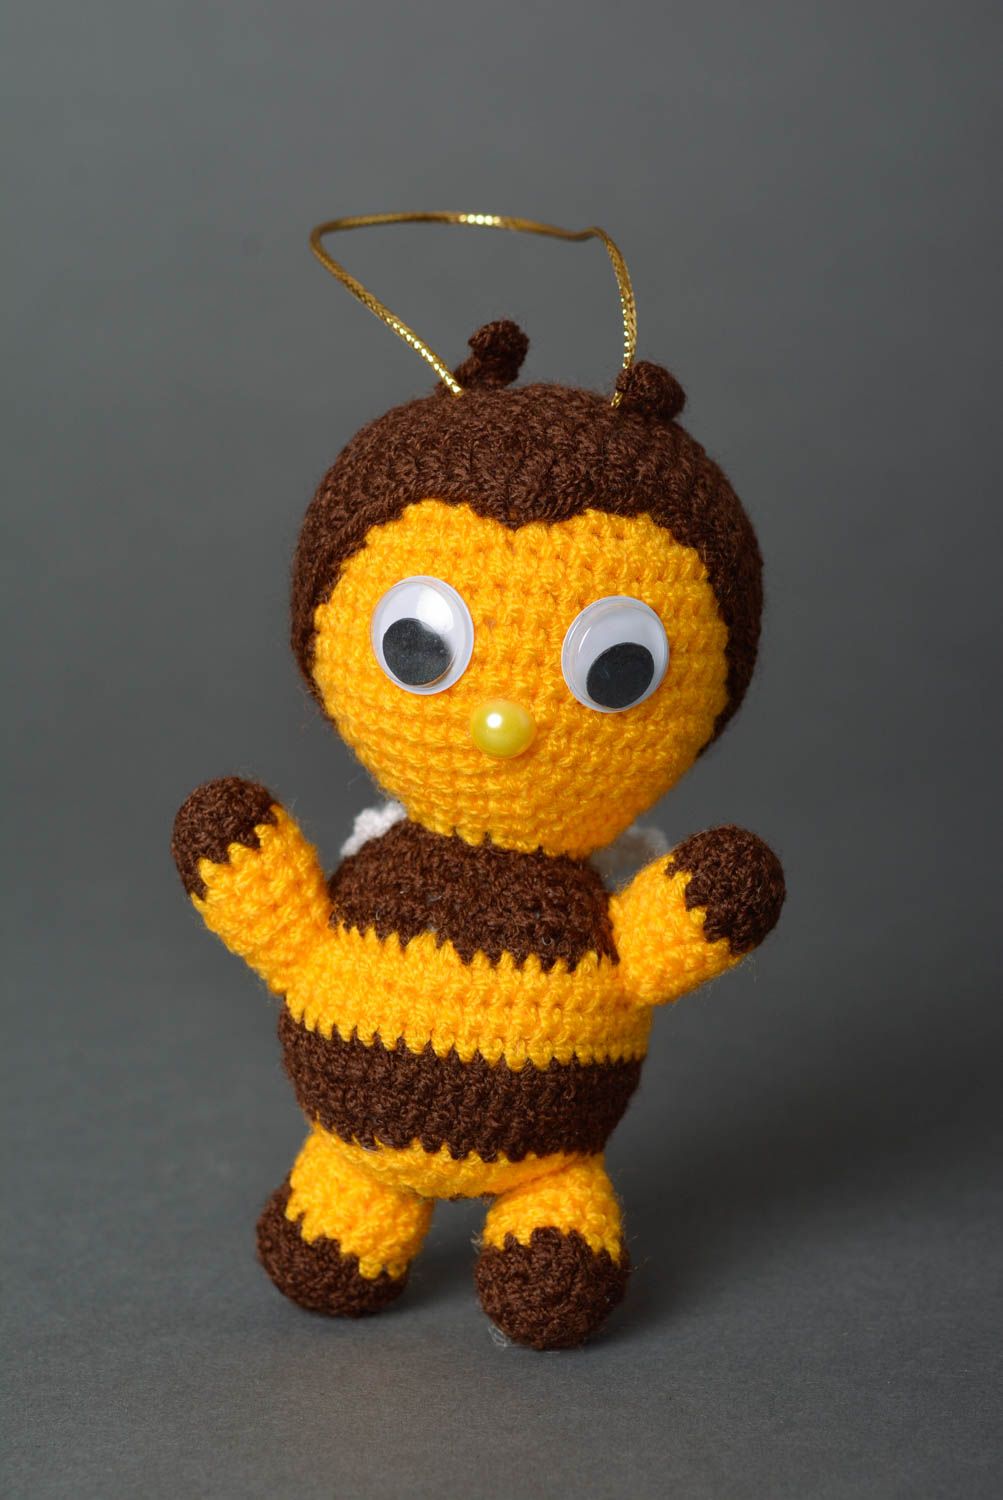 Peluche original hecho a mano juguete tejido al crochet regalo para niño Abeja foto 1